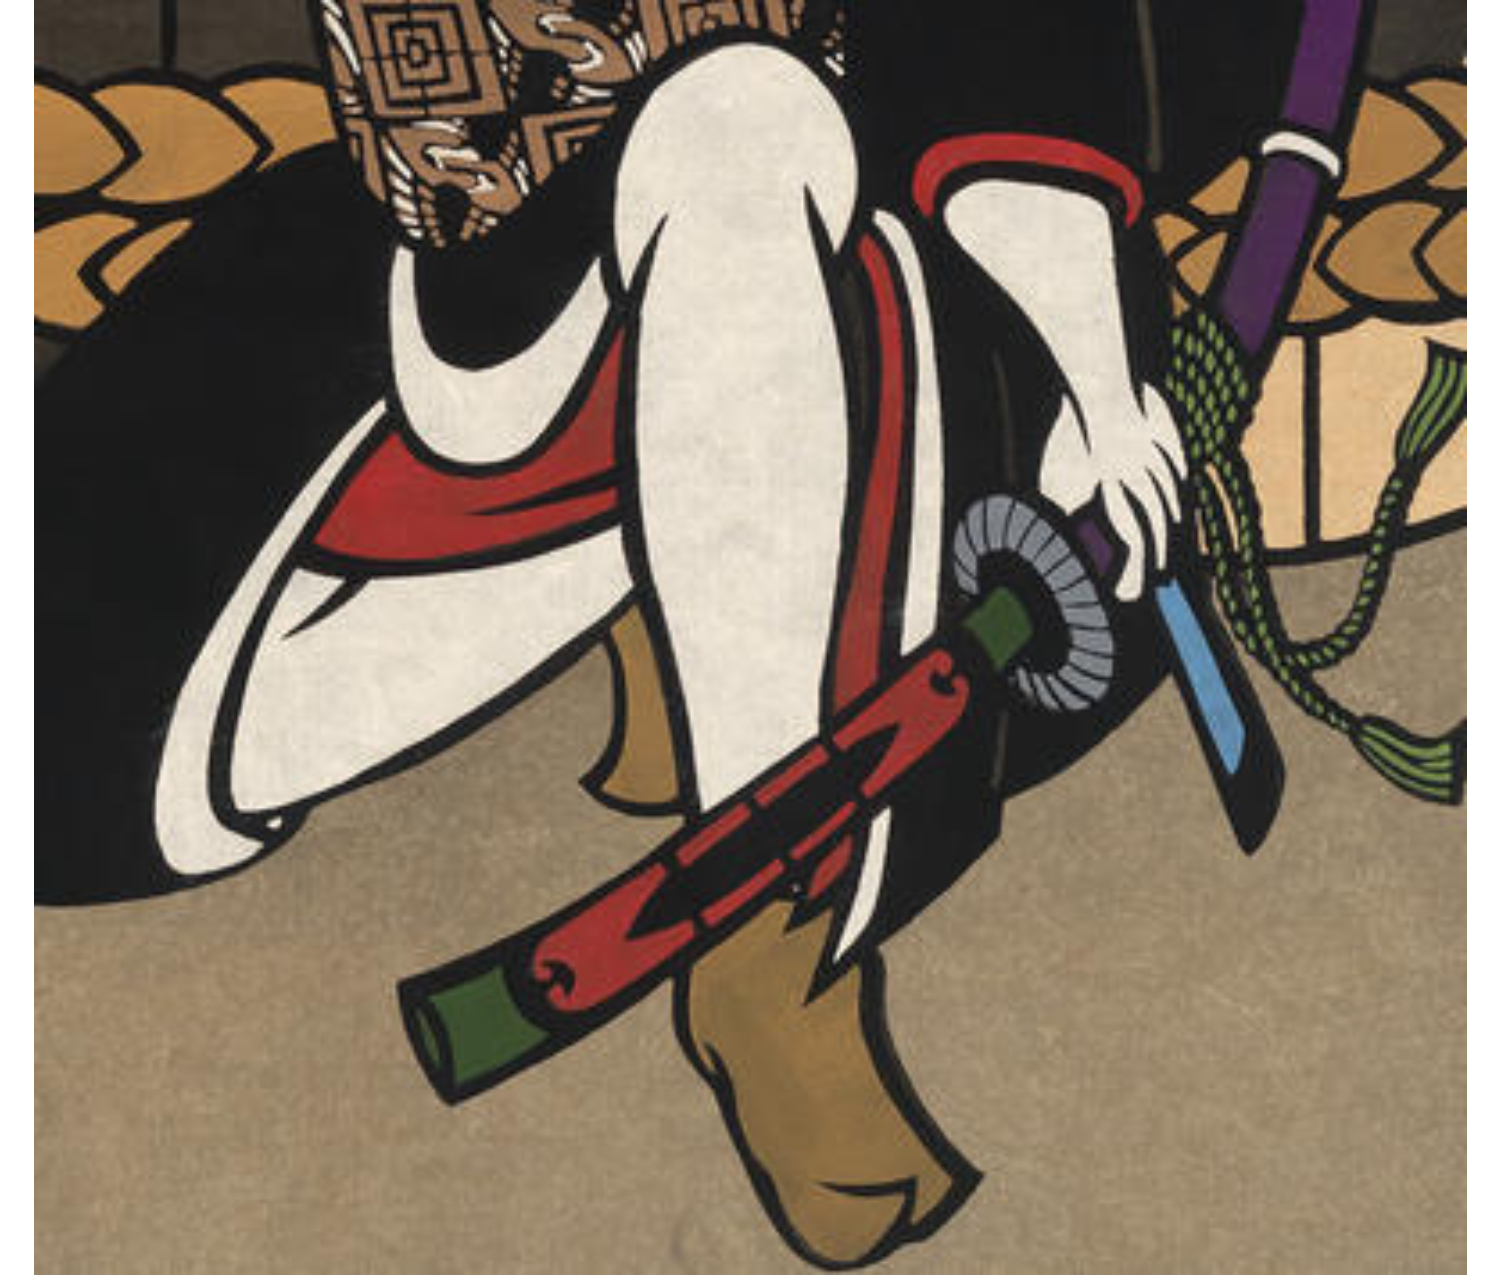 Detail of 'Taru': sword handle crossed over warrior's ankle. 